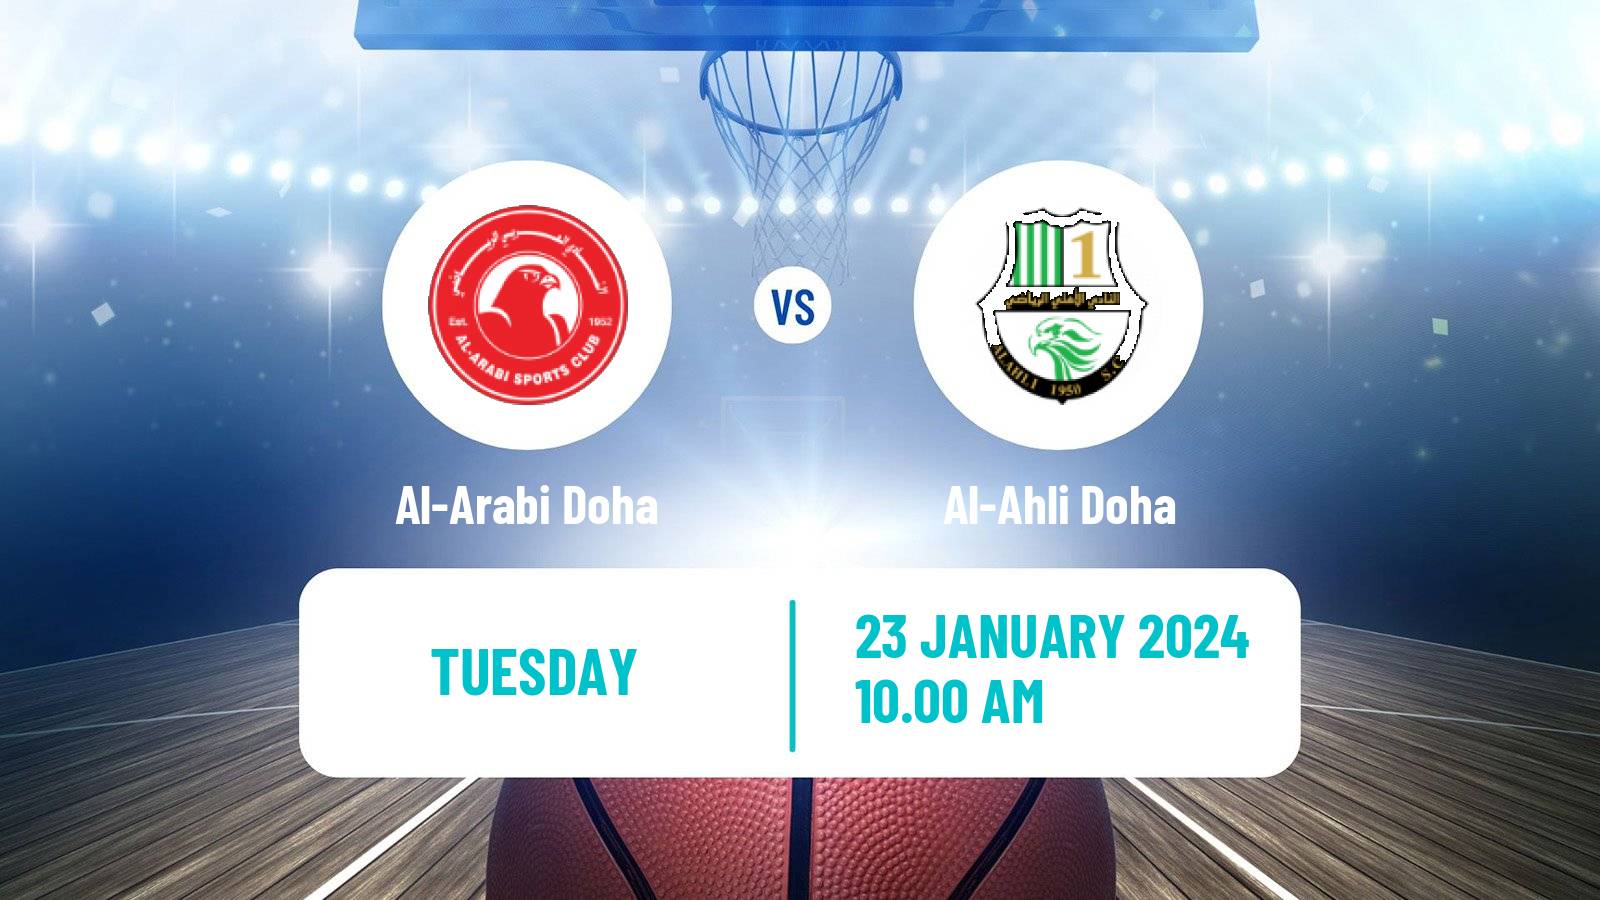 Basketball Qatar Basketball League Al-Arabi Doha - Al-Ahli Doha